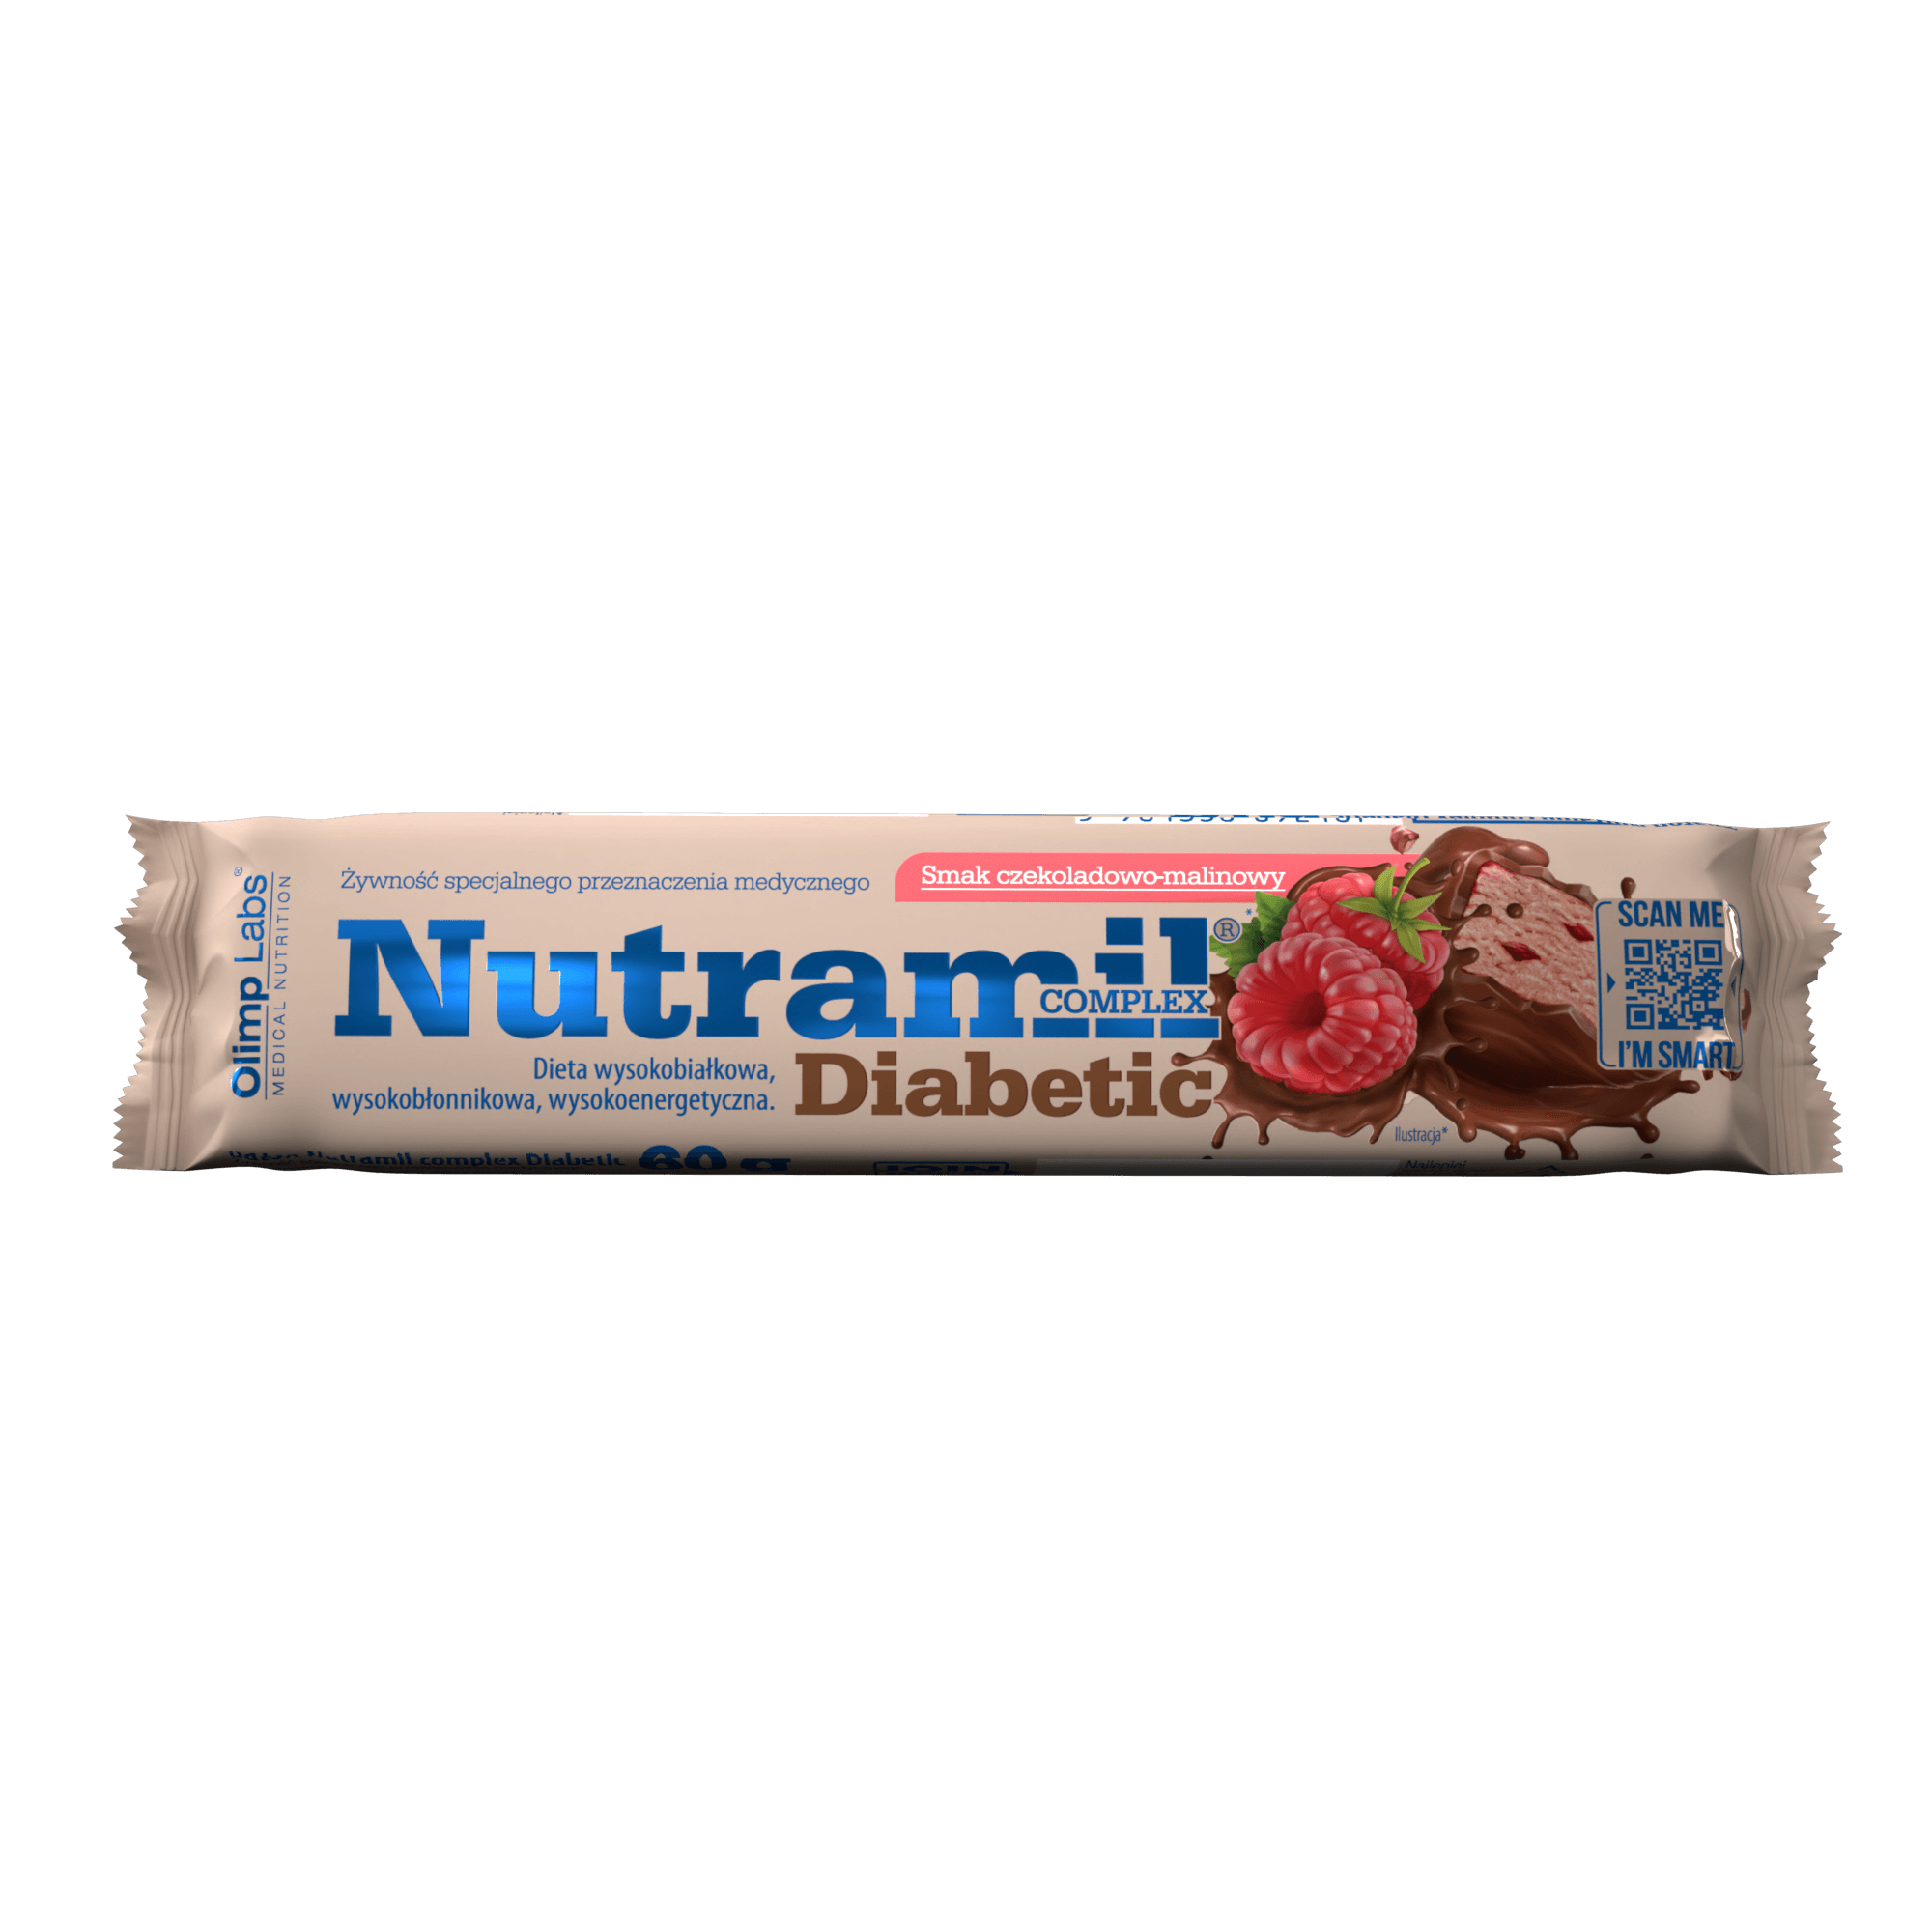 Nutramil complex Diabetic czekoladowo-malinowy